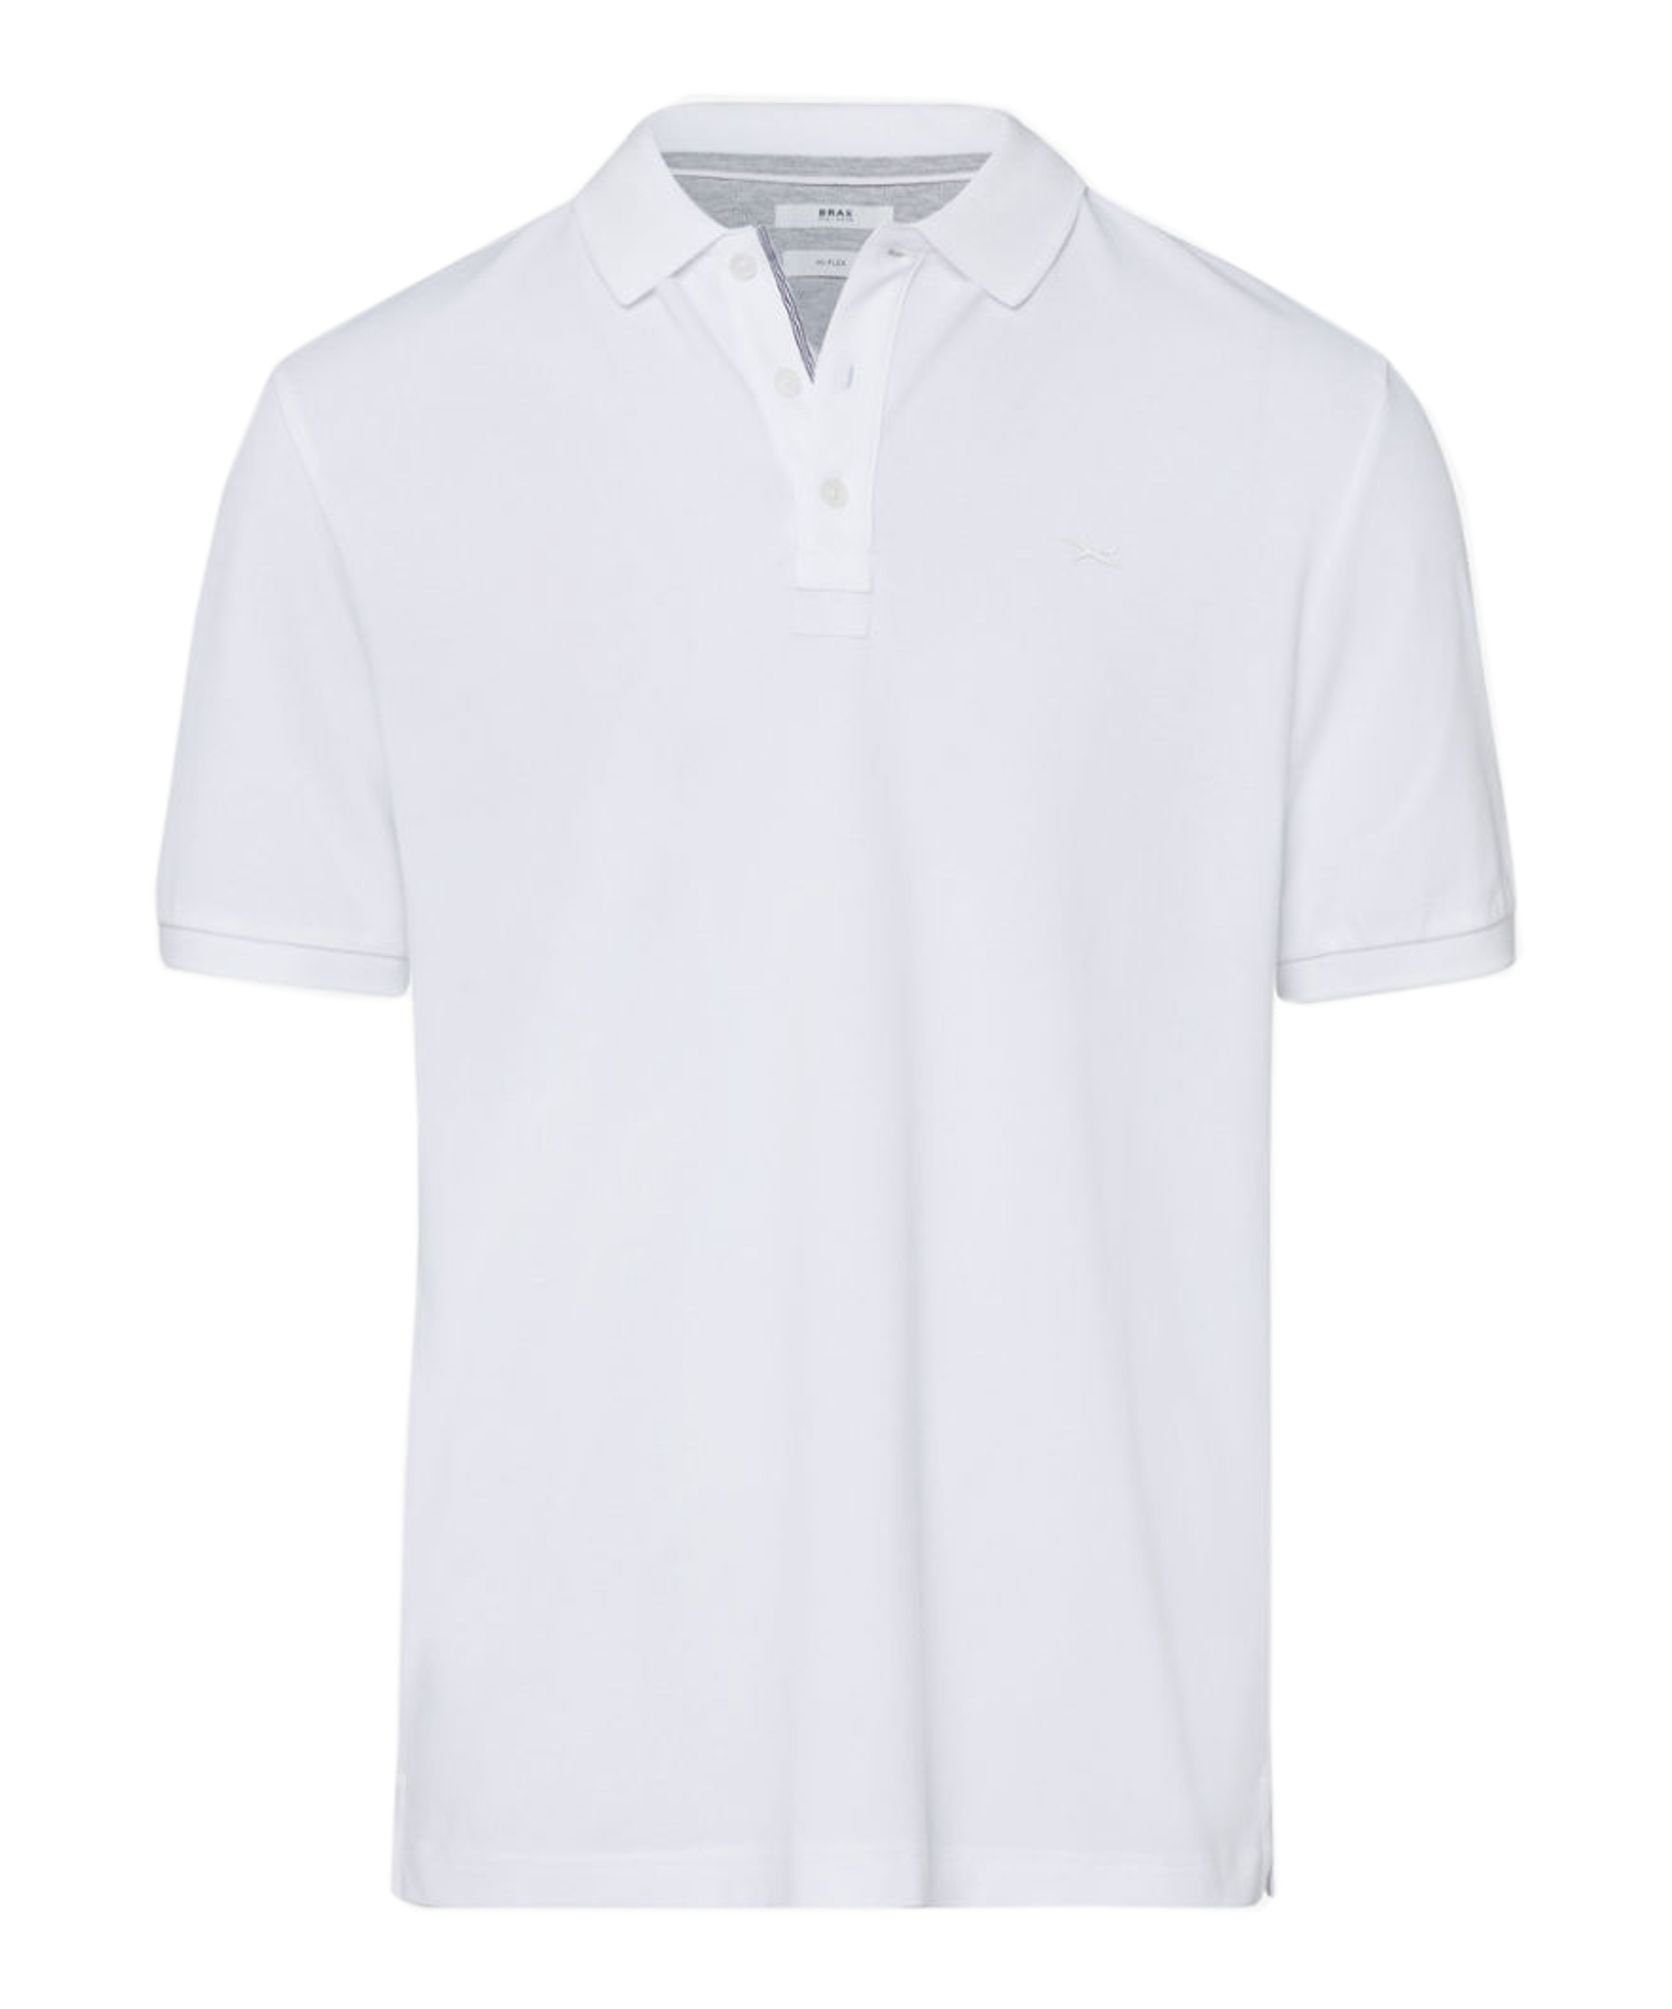 Brax Poloshirt Style Pete (24-7507) White (99) | Poloshirts